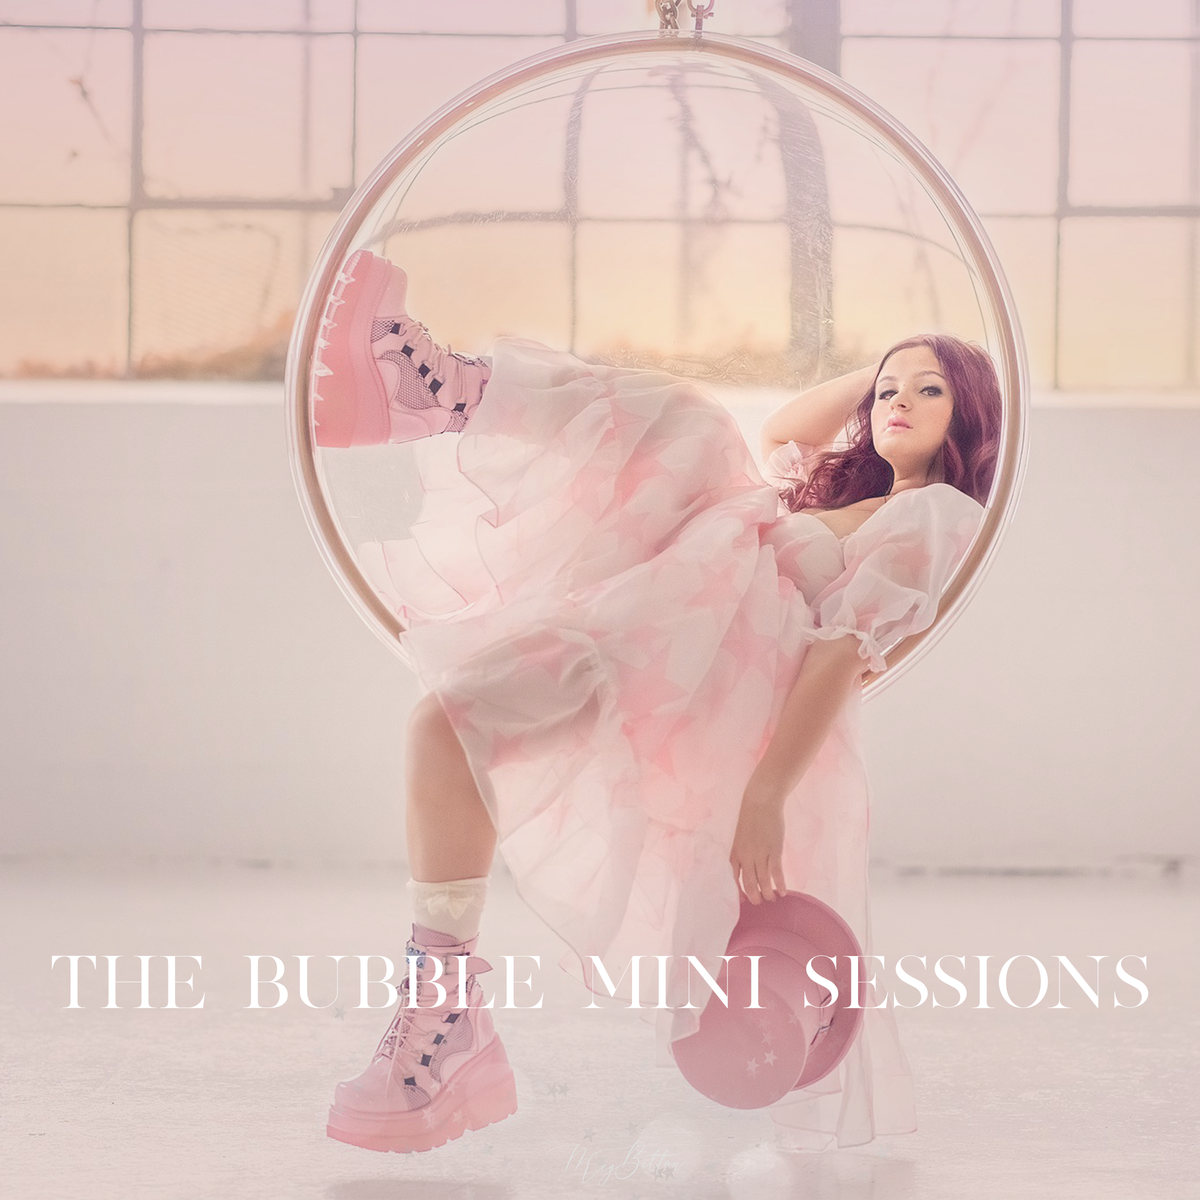 The Bubble Mini Sessions - Meg Bitton Productions